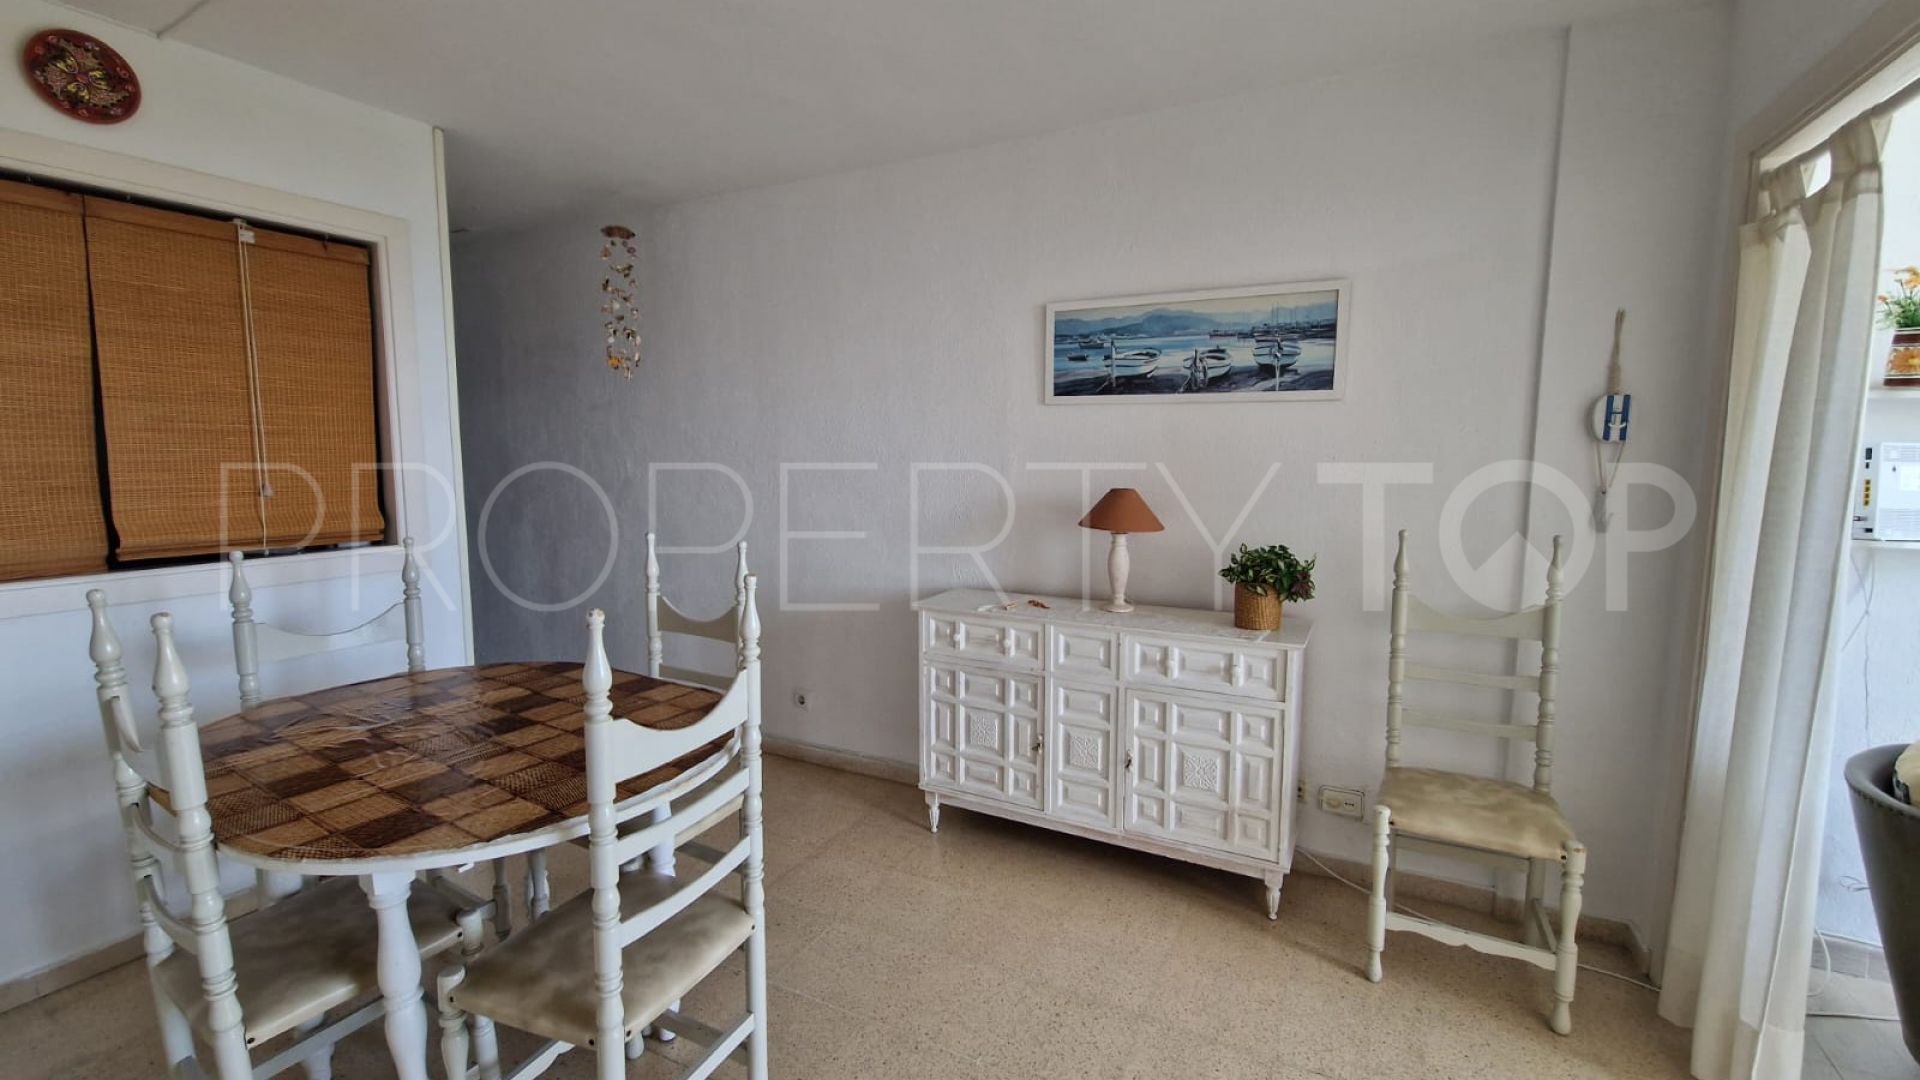 Palma de Mallorca, apartamento de 2 dormitorios en venta